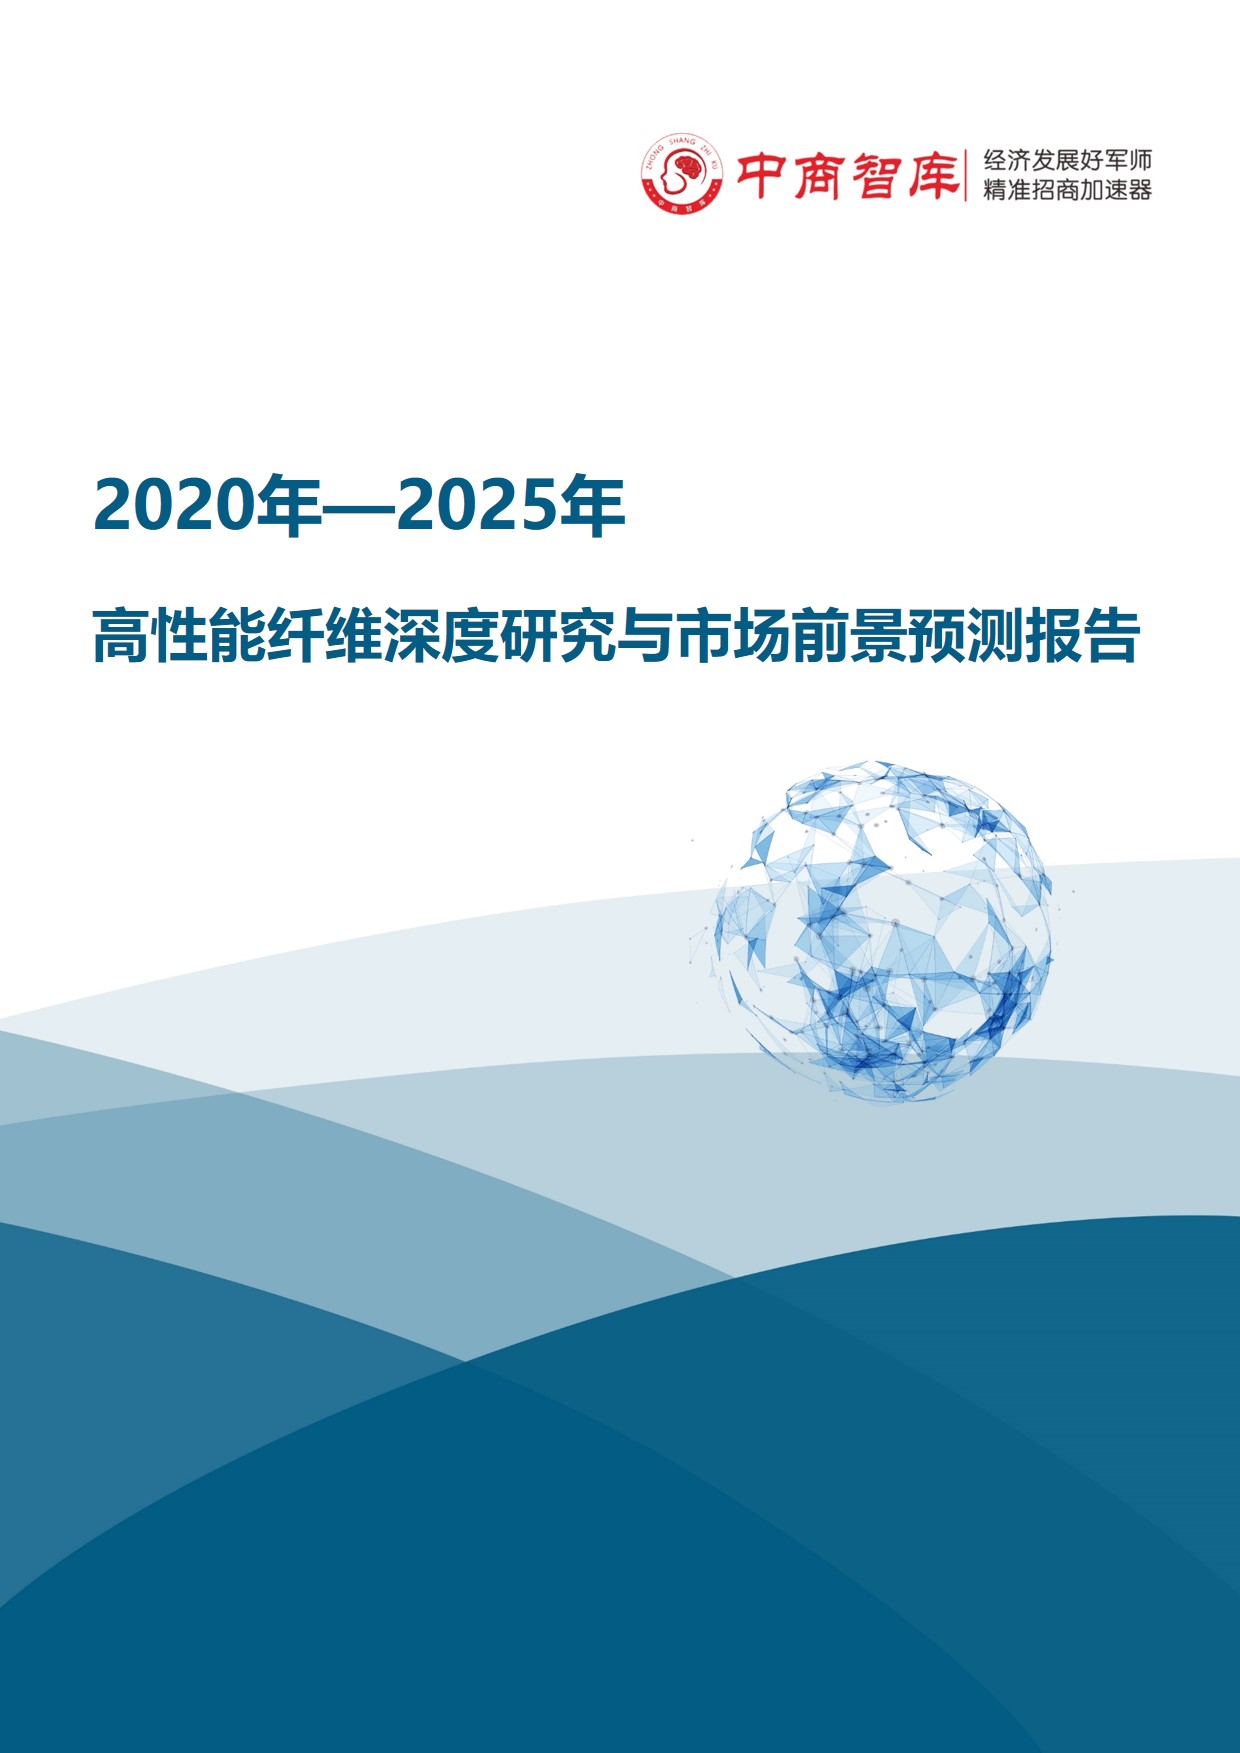 《2020-2025年高性能纤维行业深度研究与市场前景预测报告》